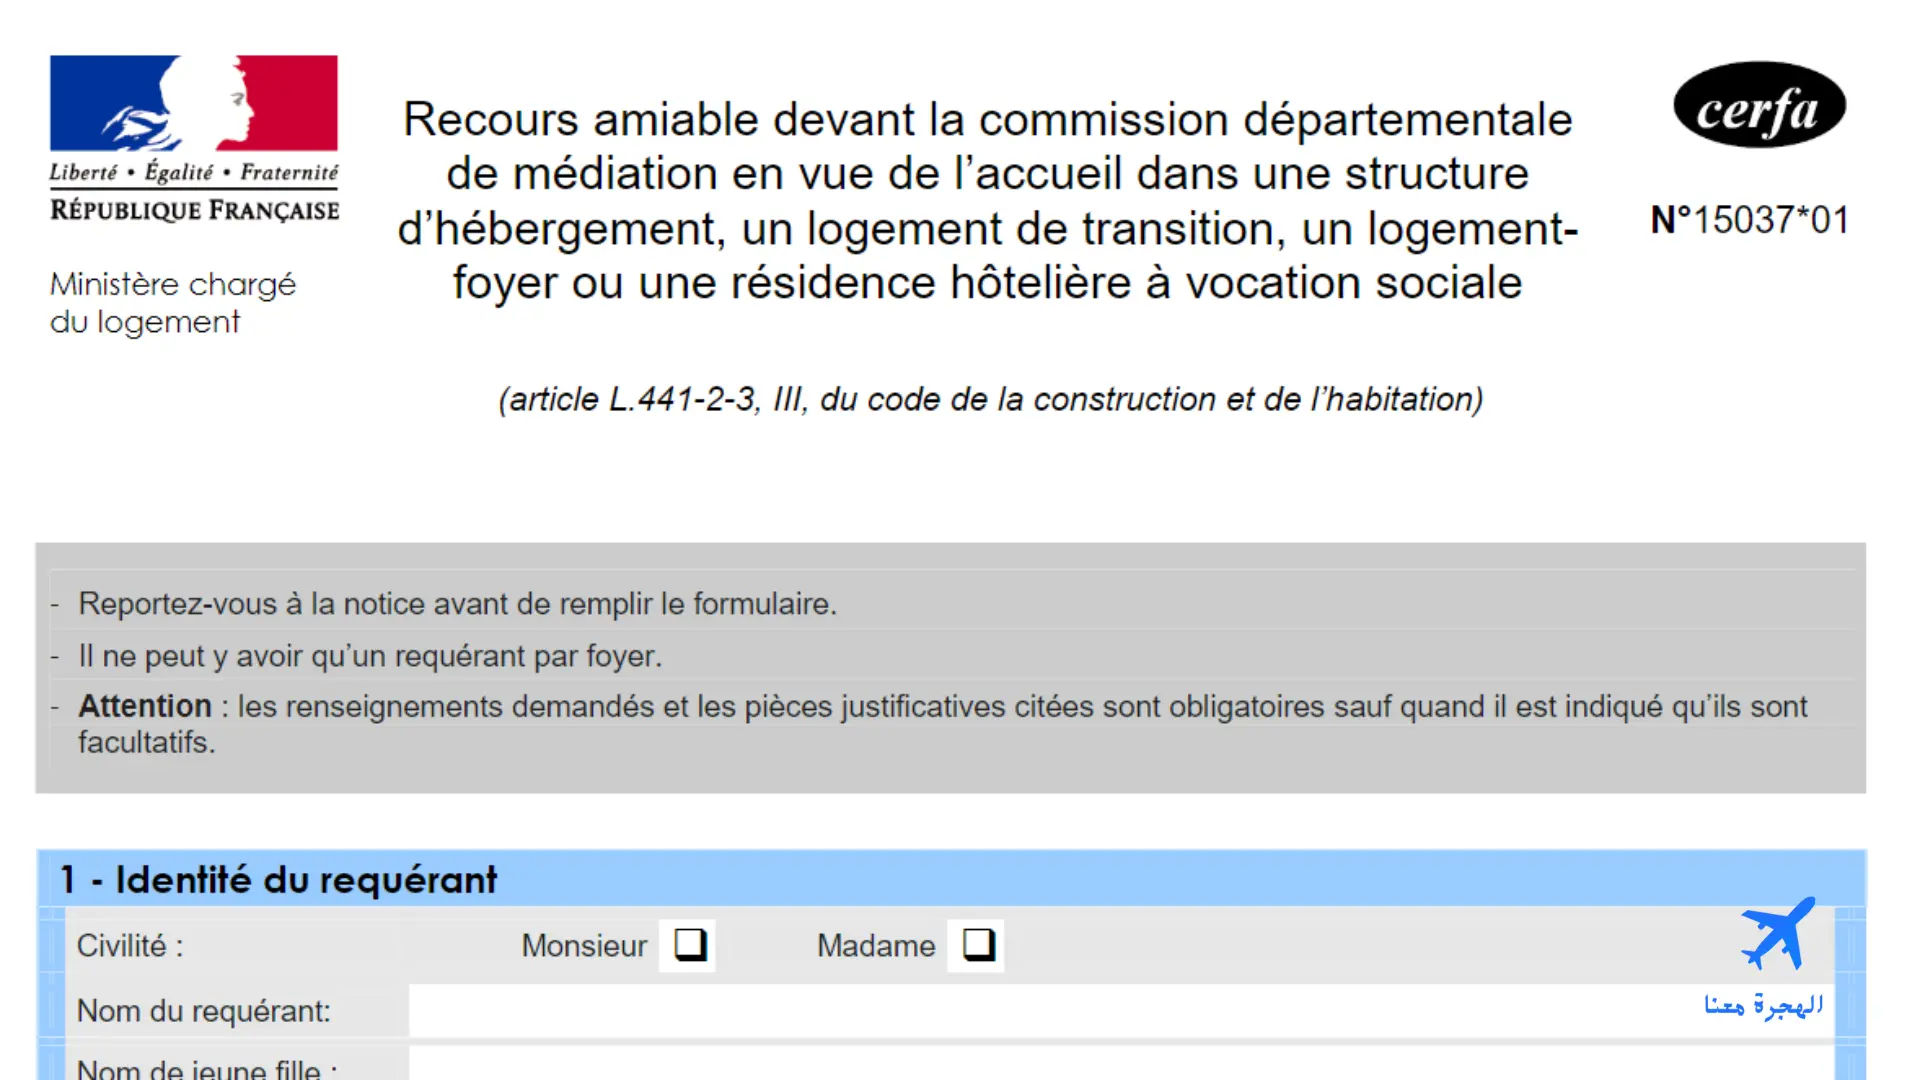 صورة من استمارة طلب الحصول على سكن في فرنسا